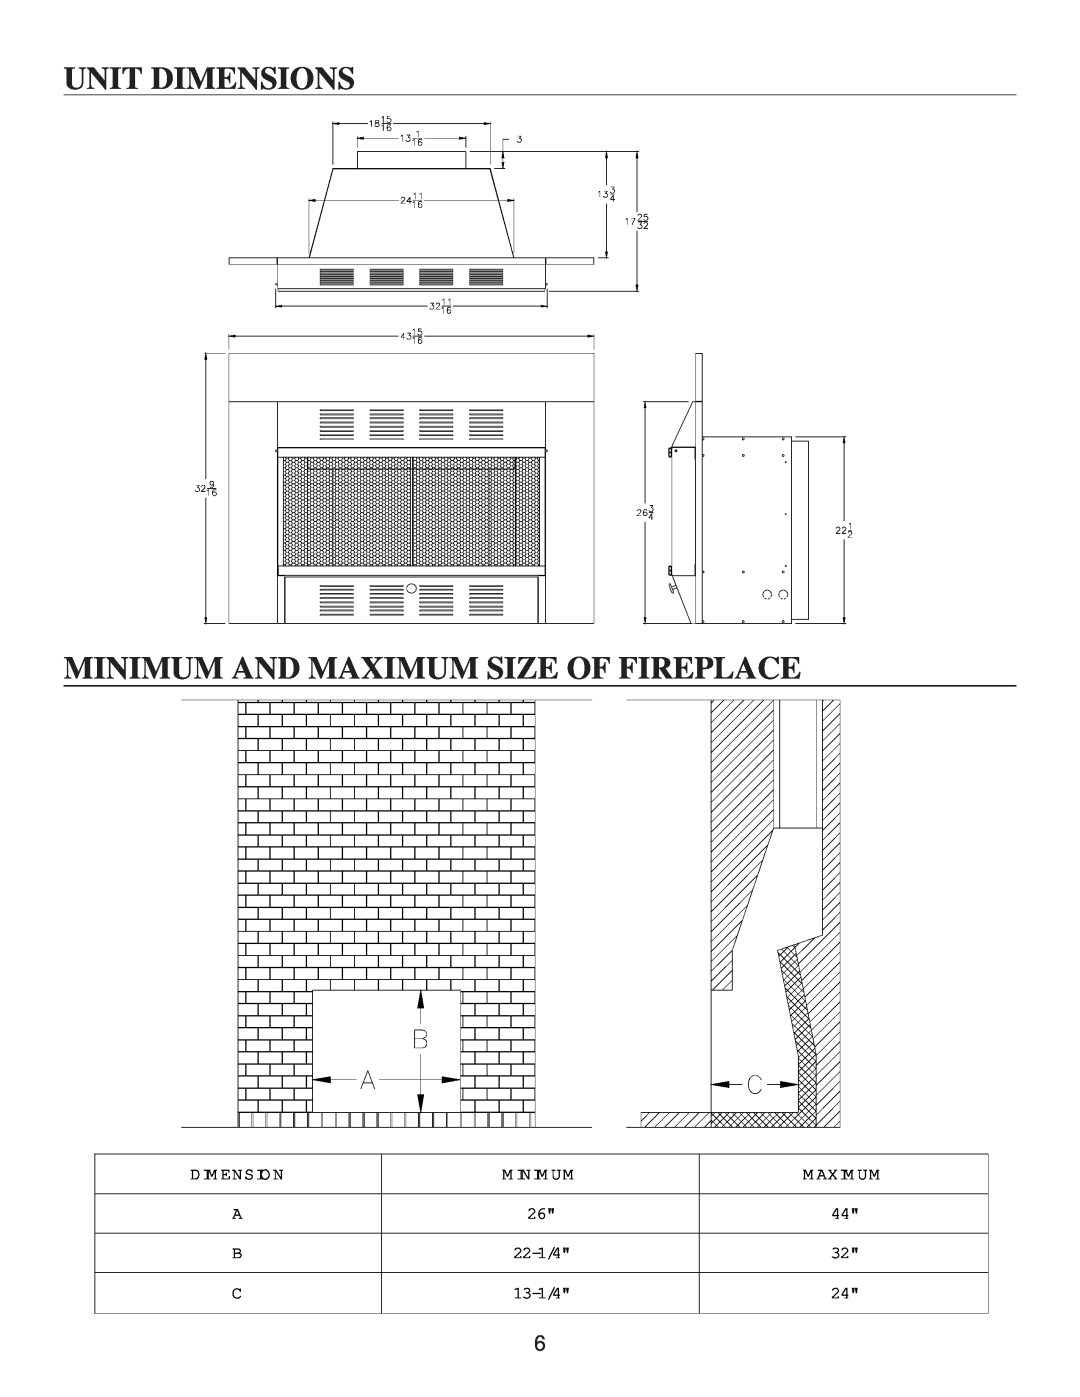 United States Stove VF30IN manual Unit Dimensions, Minimum And Maximum Size Of Fireplace, Dim Ensio N, M Inim Um, M Axim Um 